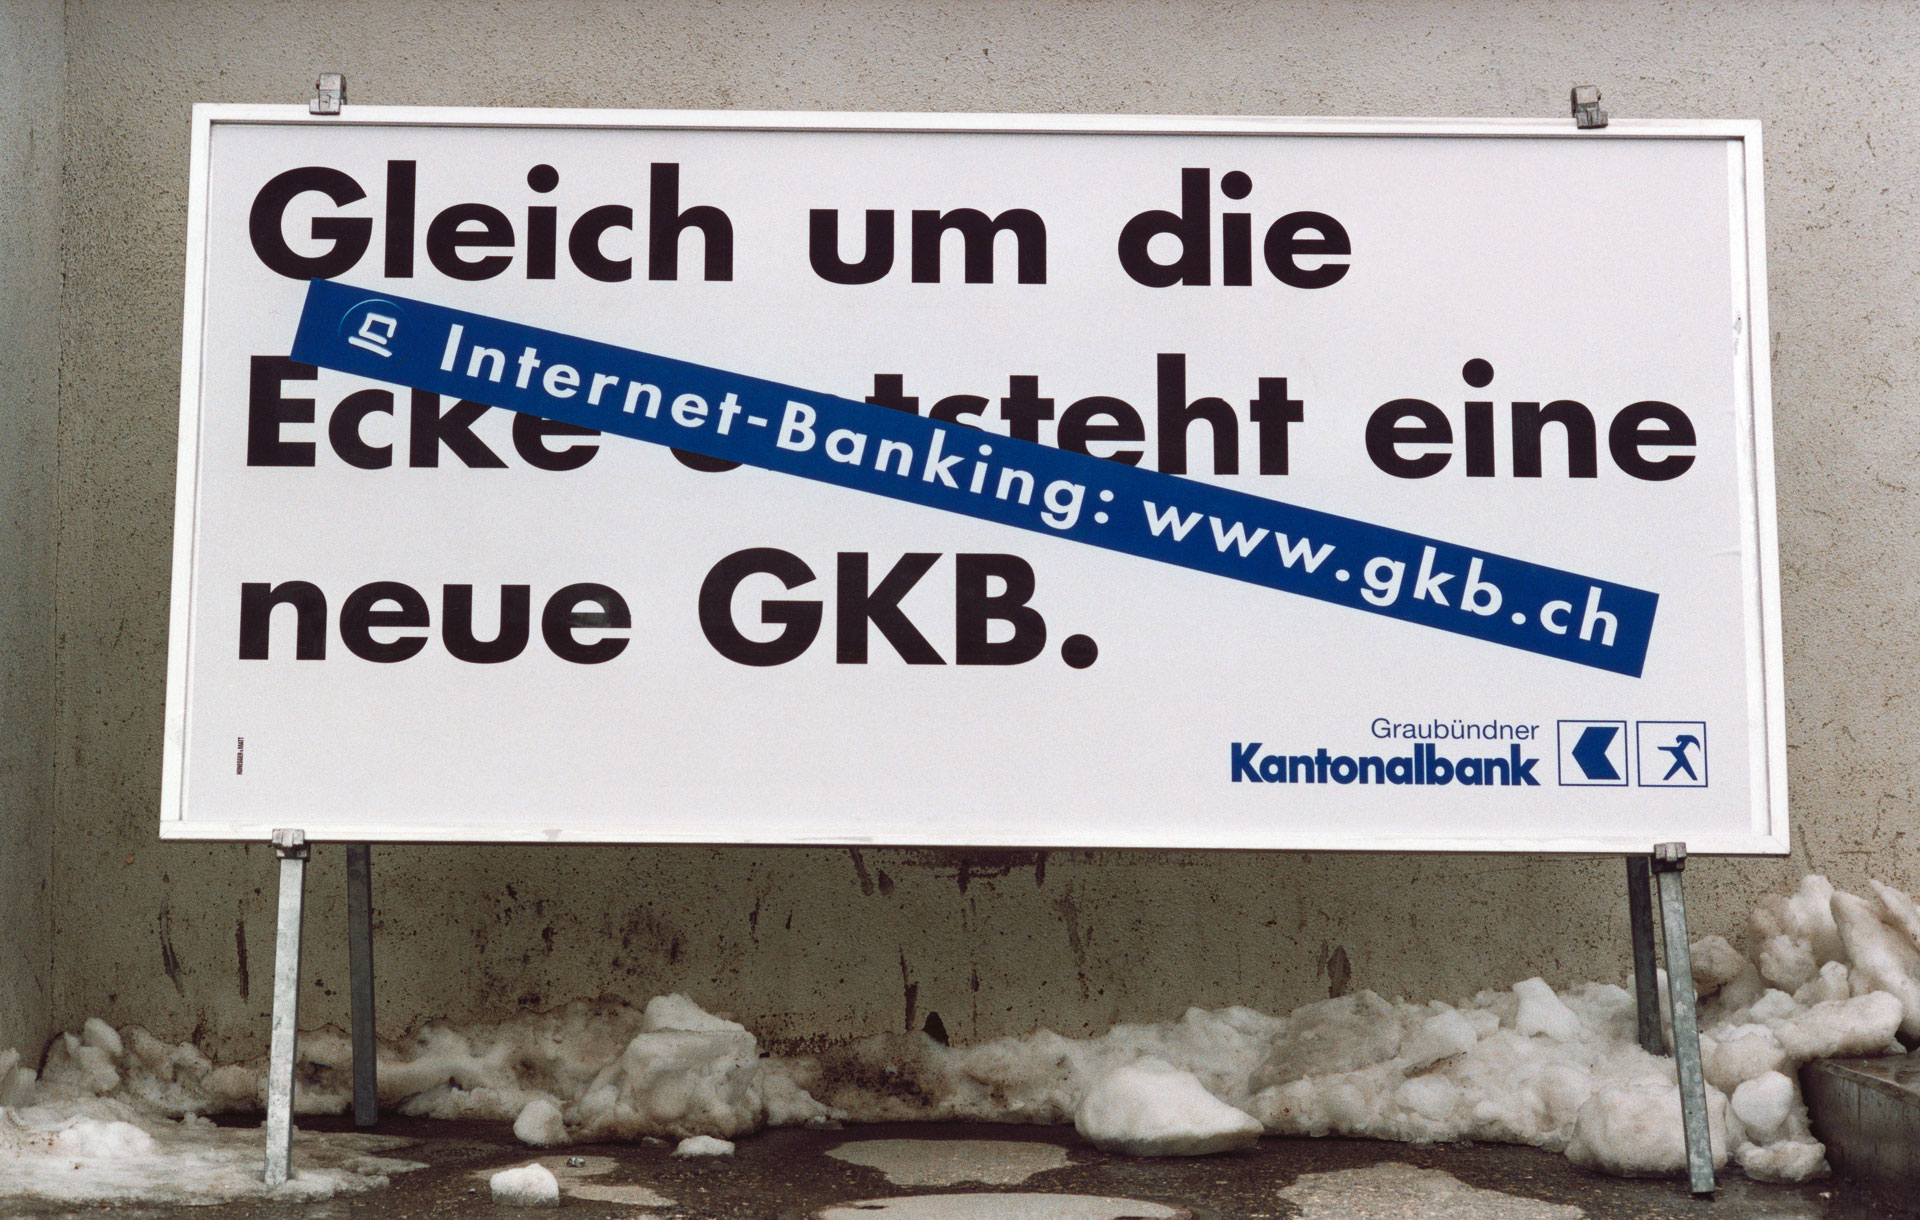 Sorgten für Aufsehen, die Plakatkampagne der GKB 1999